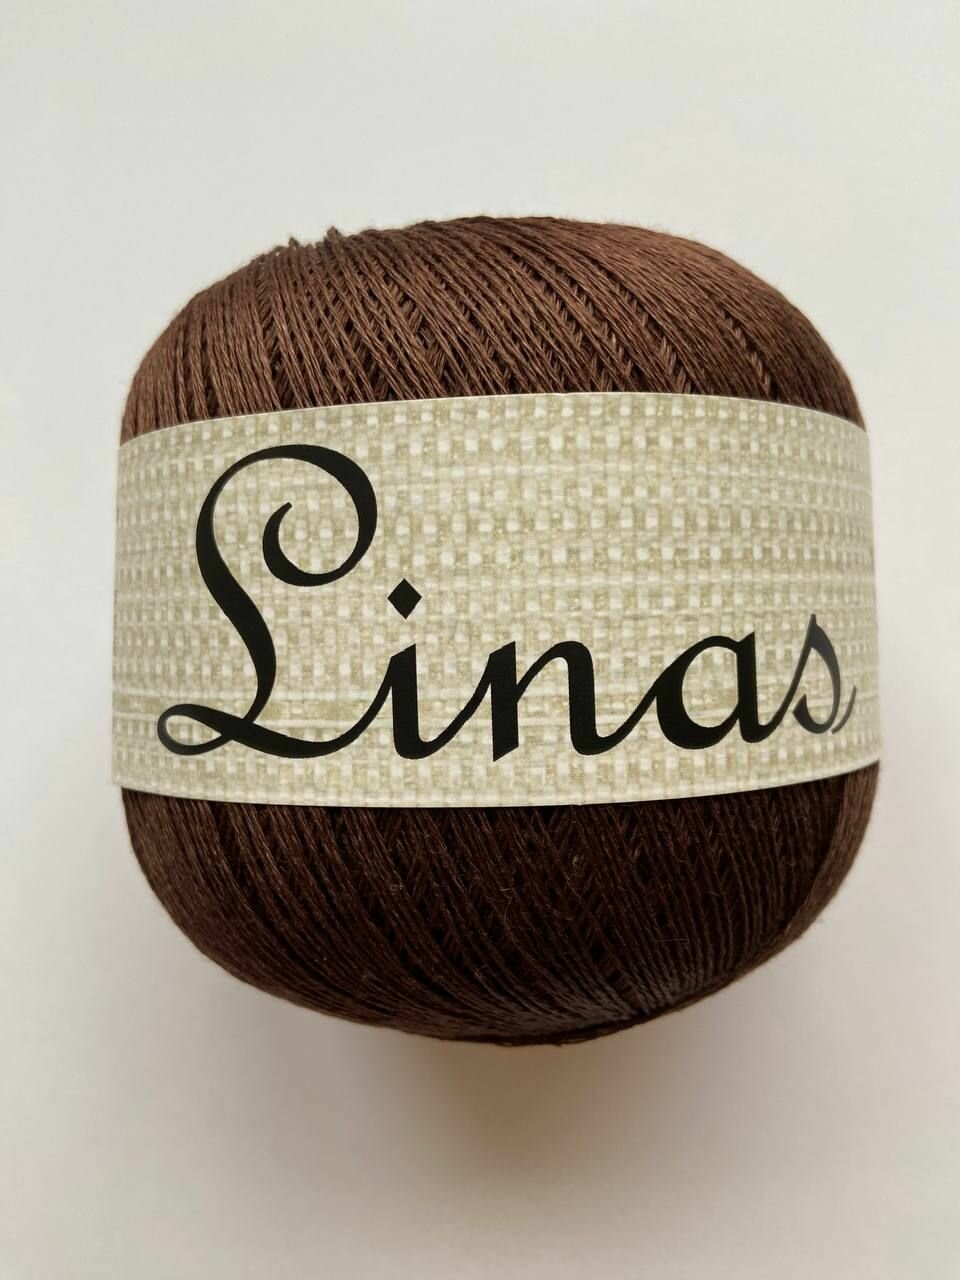 Пряжа для вязания Midara Linas, 100% лён, 2 мотка по 100 гр